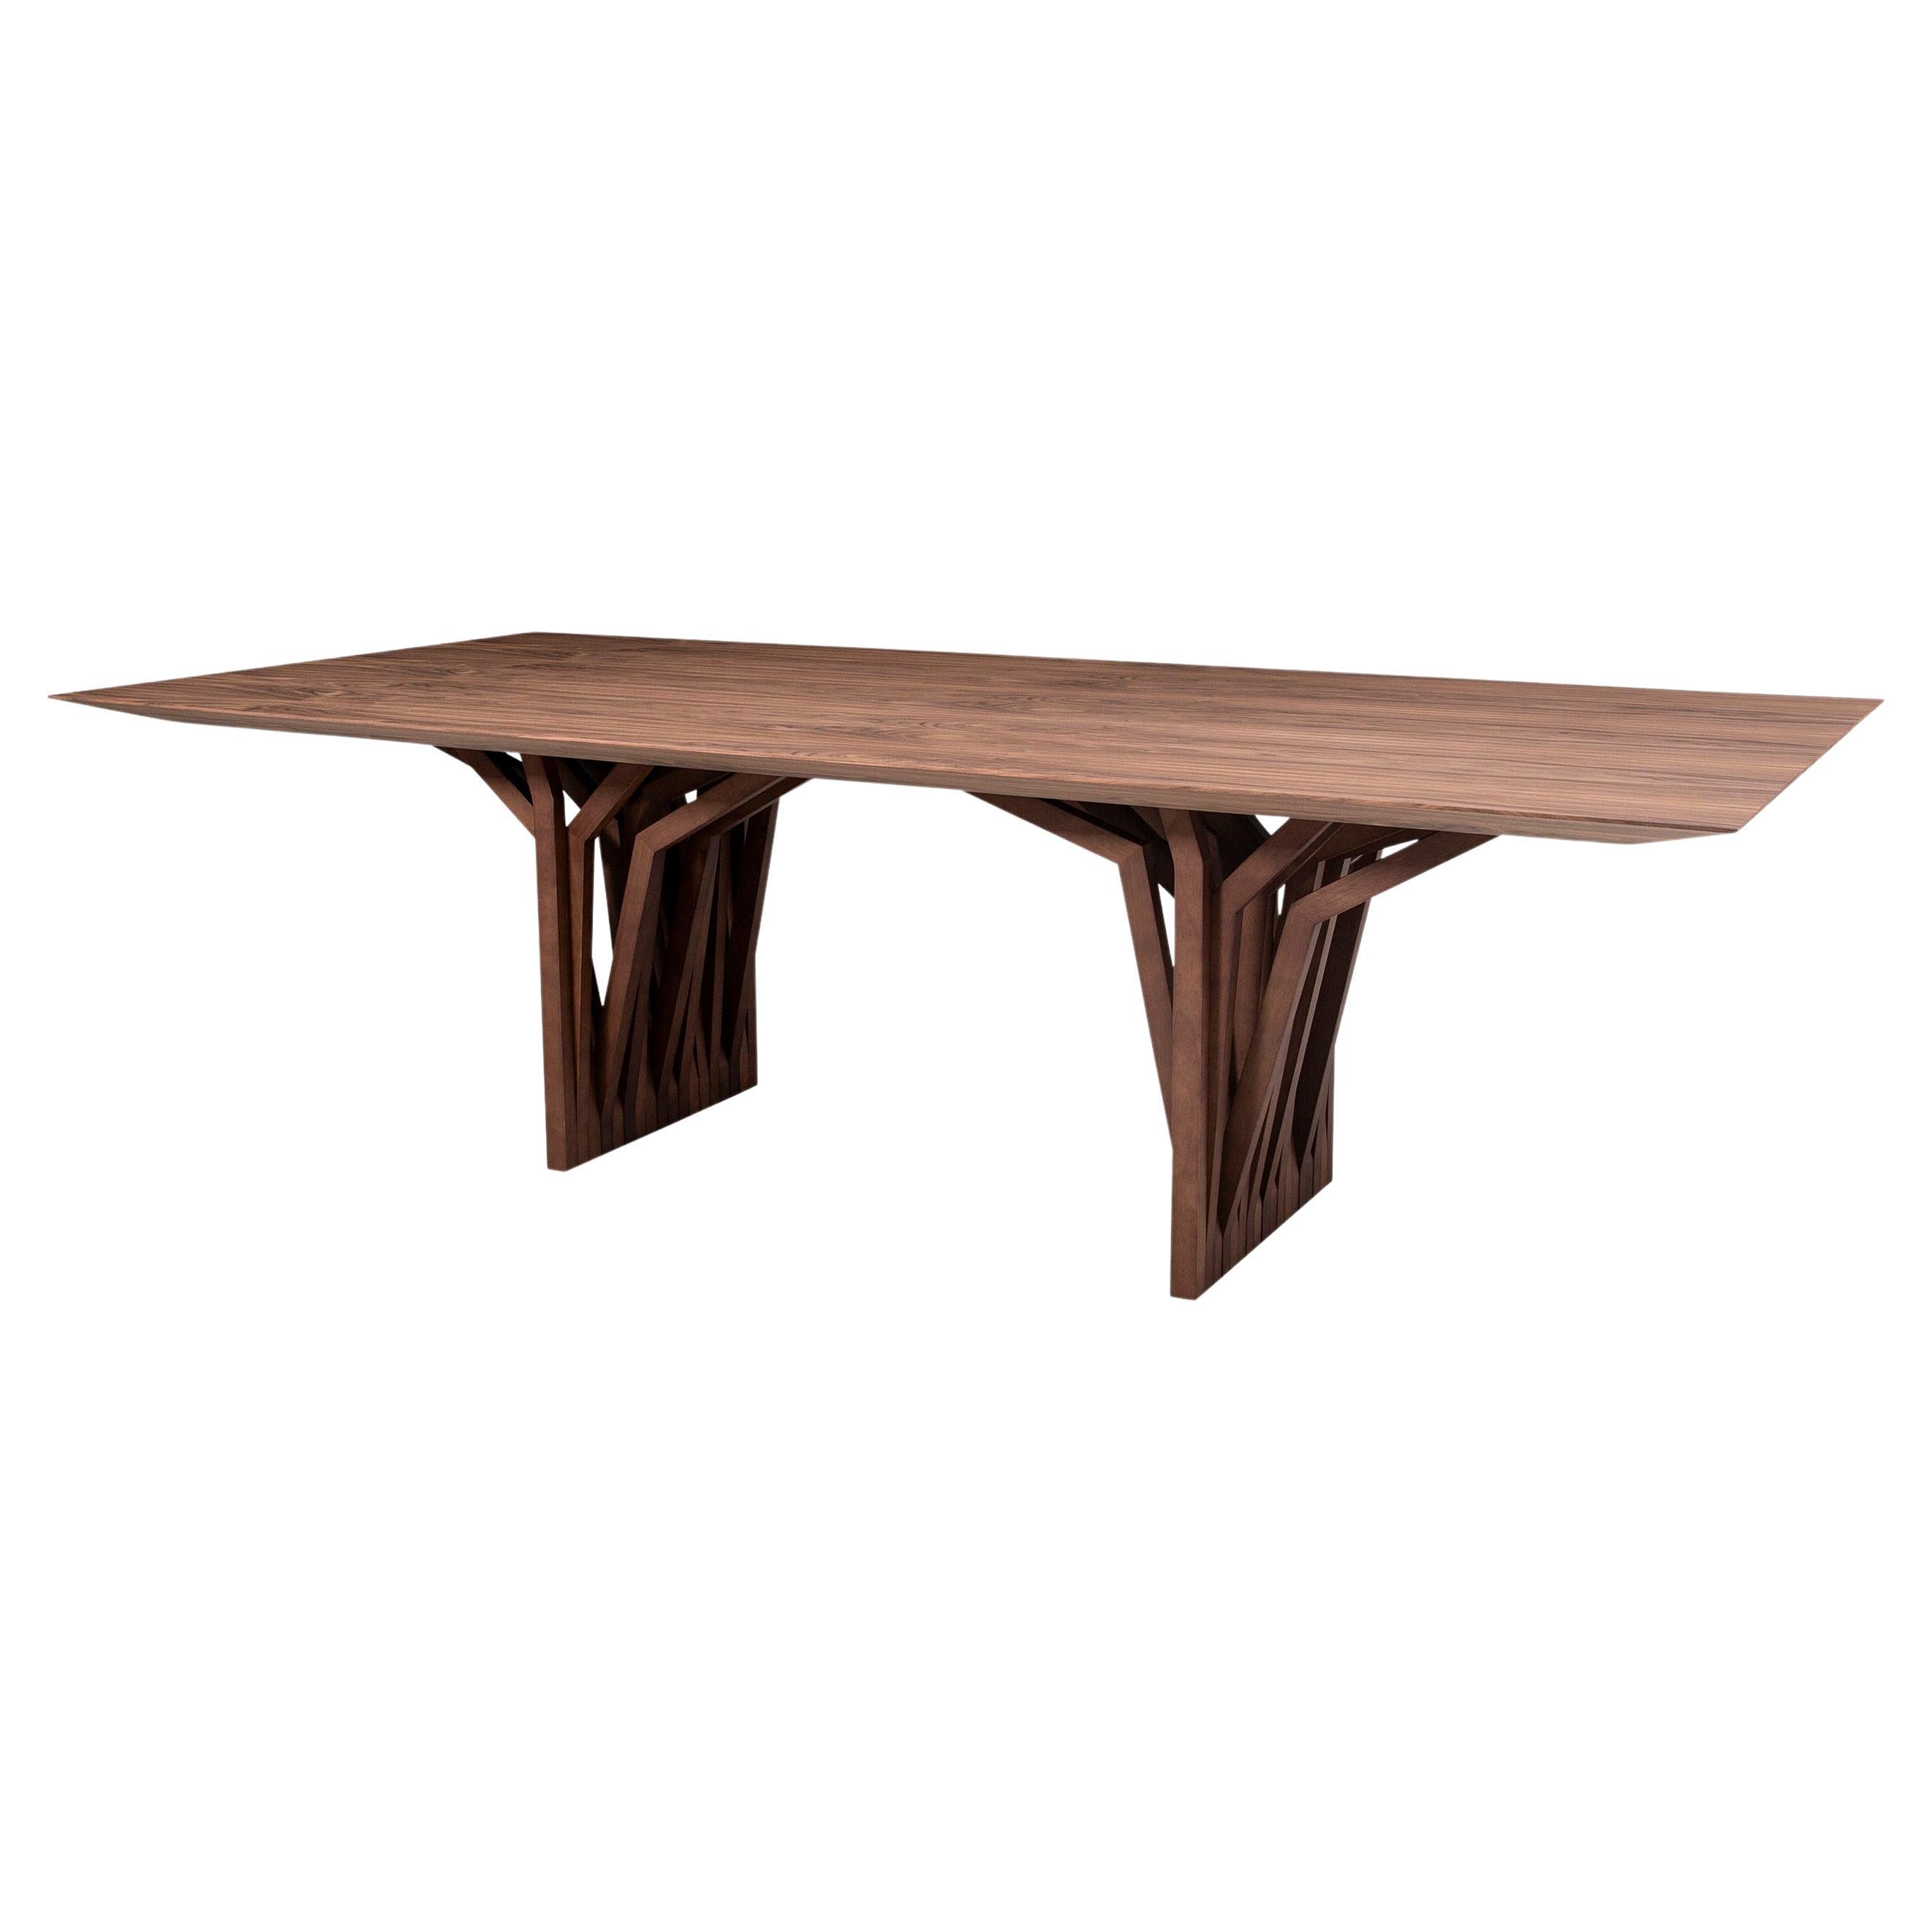 La table de salle à manger Radi est un chef-d'œuvre avec un plateau en placage de bois finition noyer et une base de table originale en forme d'ancre de toit, inspirée par les racines aériennes des arbres. Cette table de salle à manger est une pièce